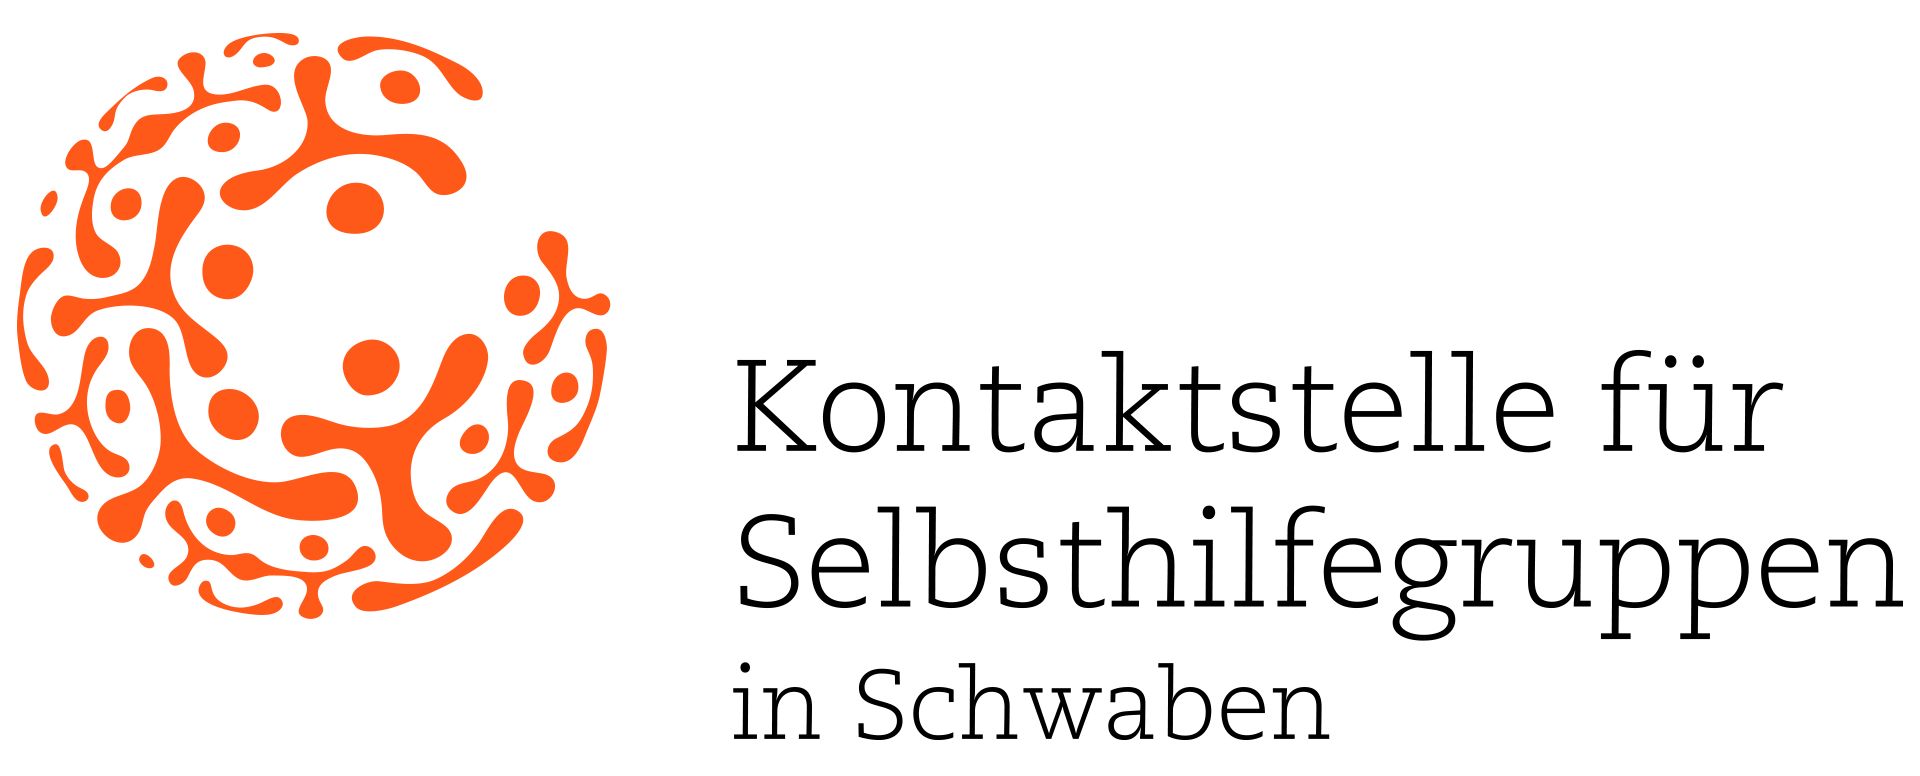 KS Selbsthilfegruppen Logo CMYK transparent